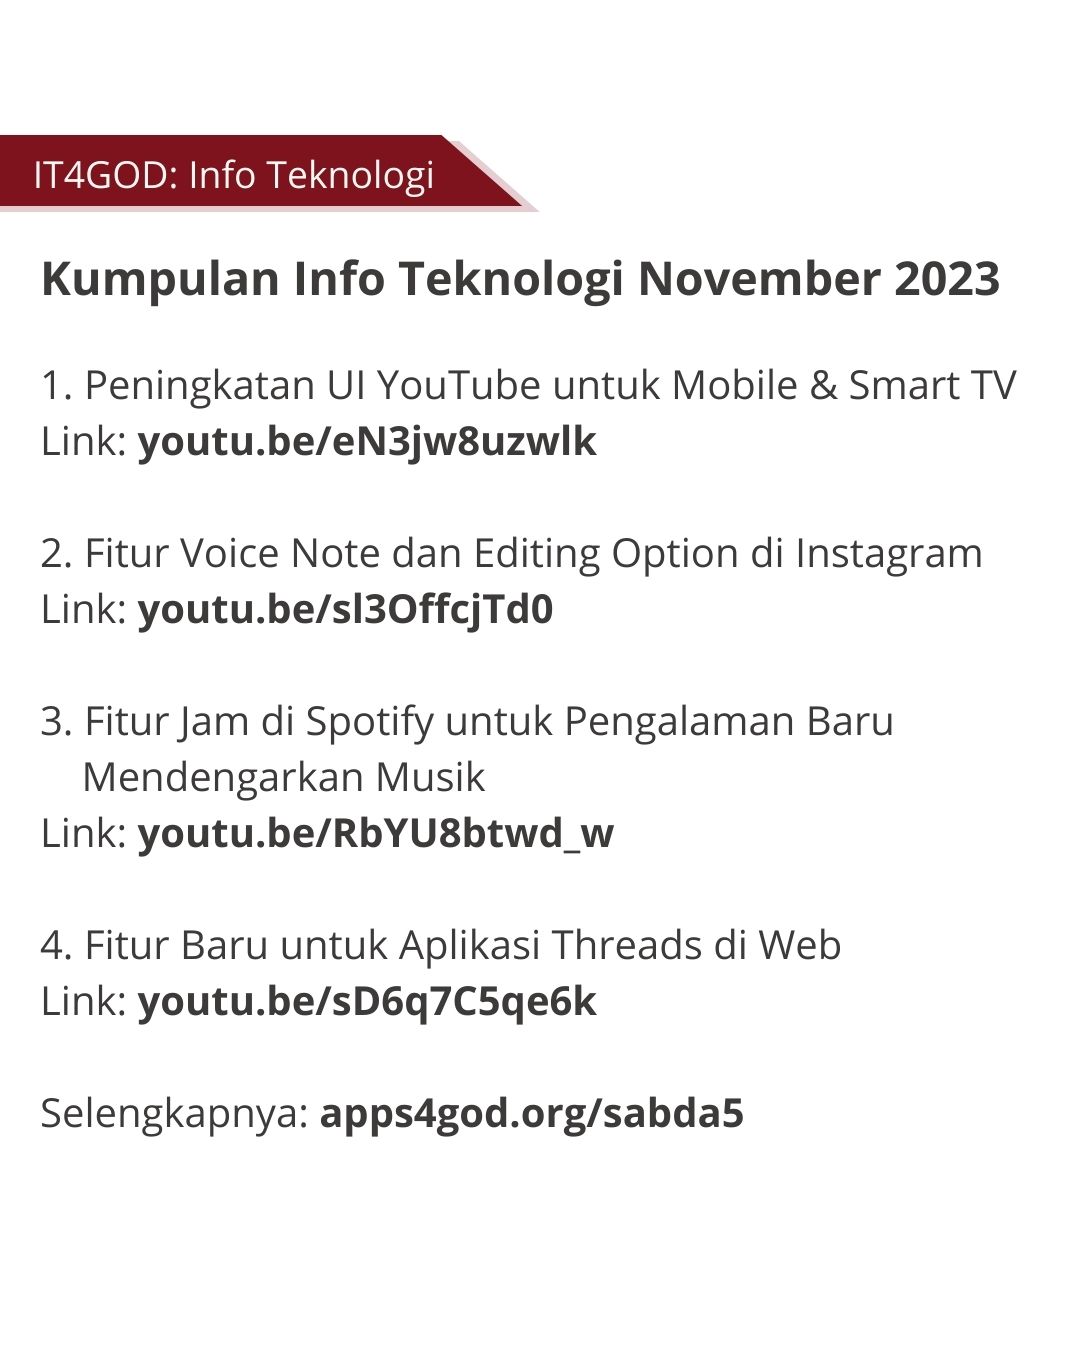 Kumpulan info teknologi Apps4GOD dari November 2023.